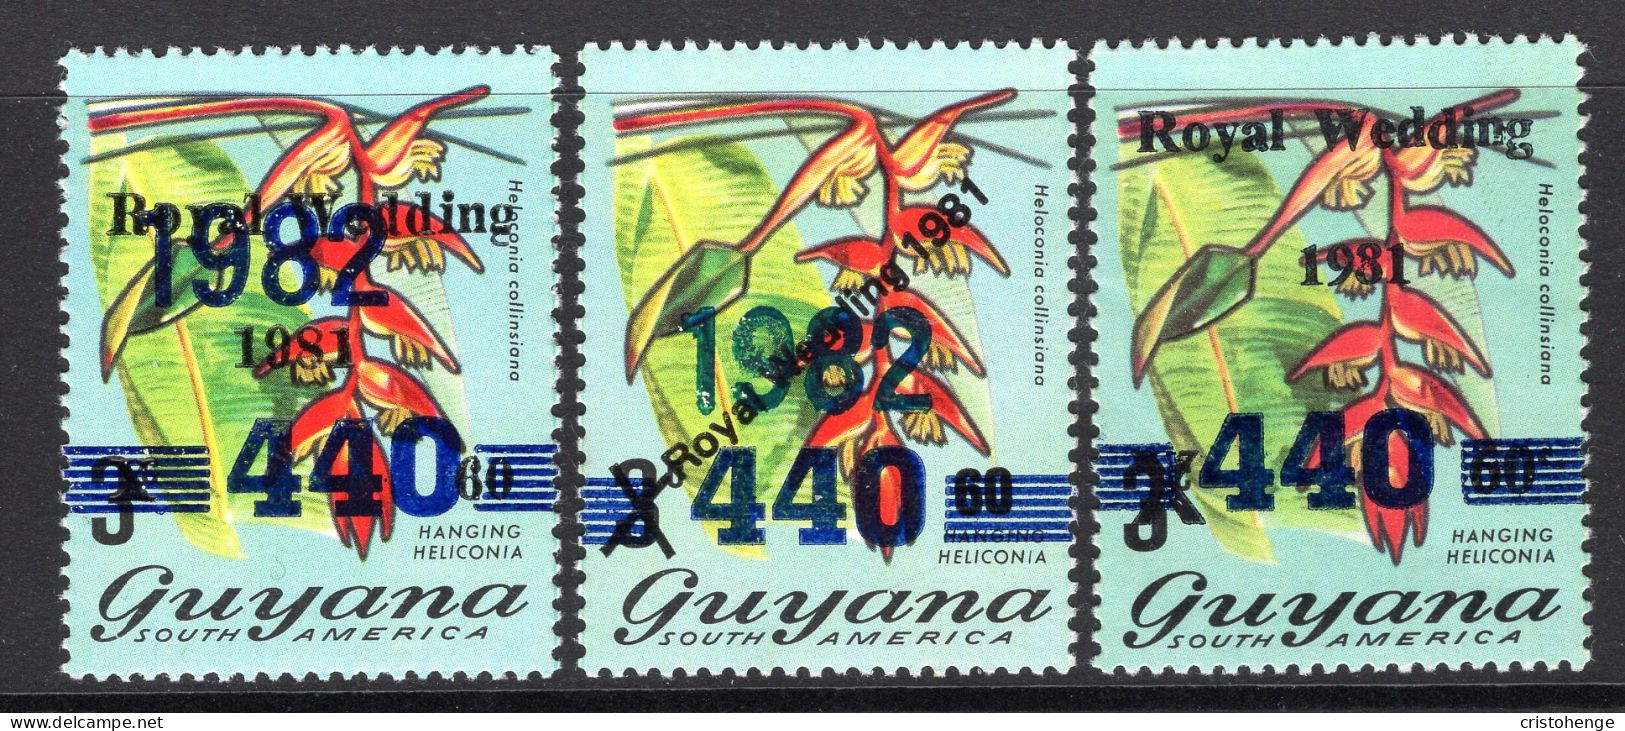 Guyana 1982 Date Overprint & Varieties HM (SG 1004/b/c) - Guyana (1966-...)